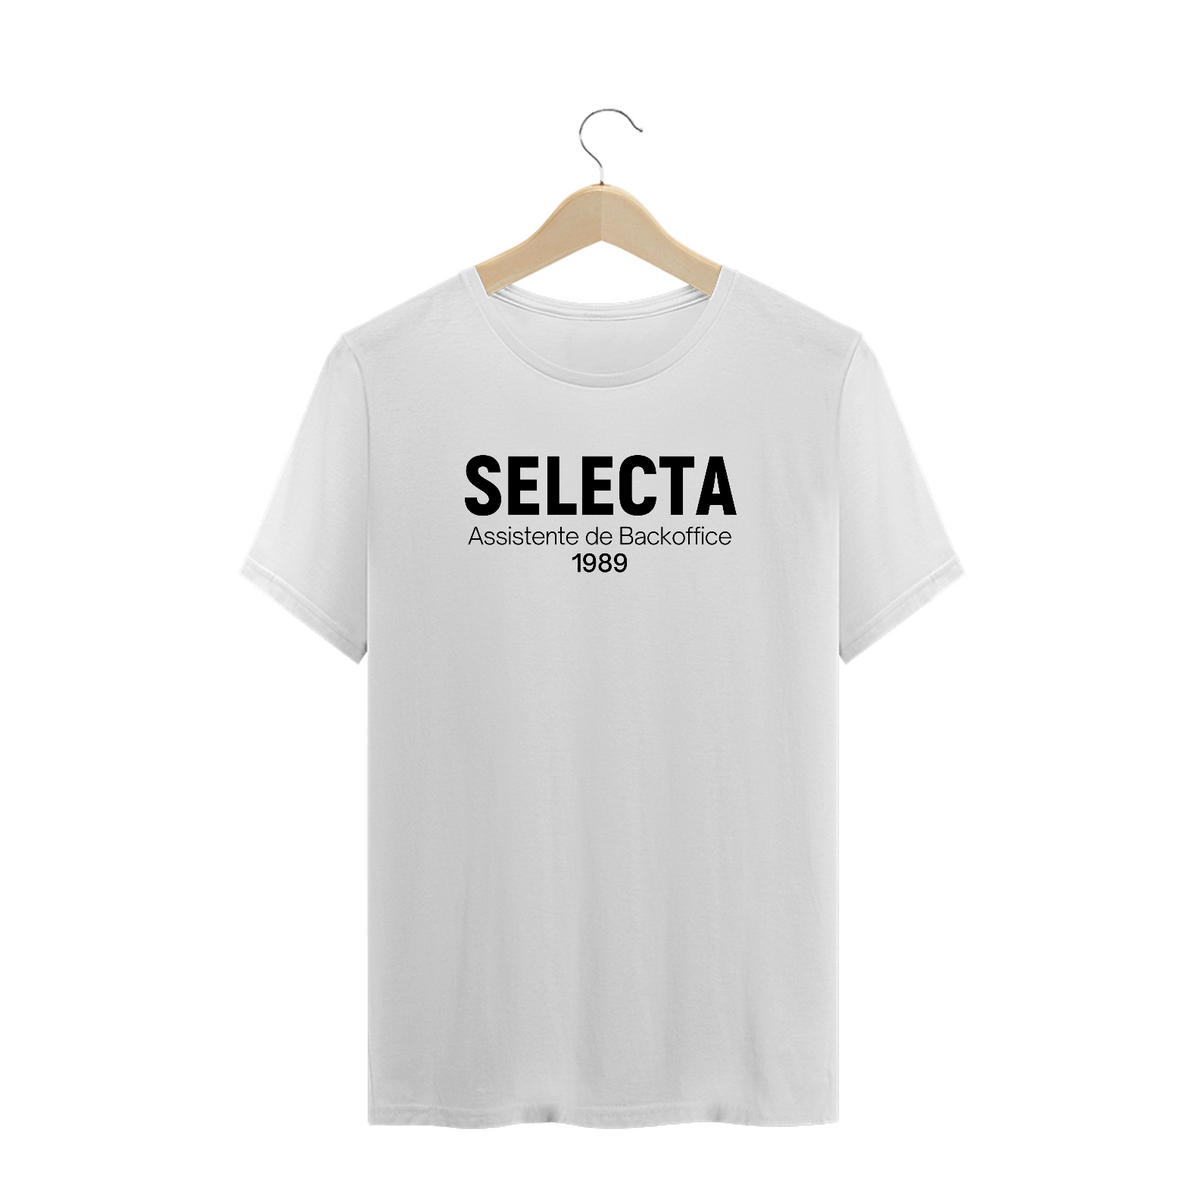 Nome do produto: SELECTA: Assistente de Backoffice (1989)